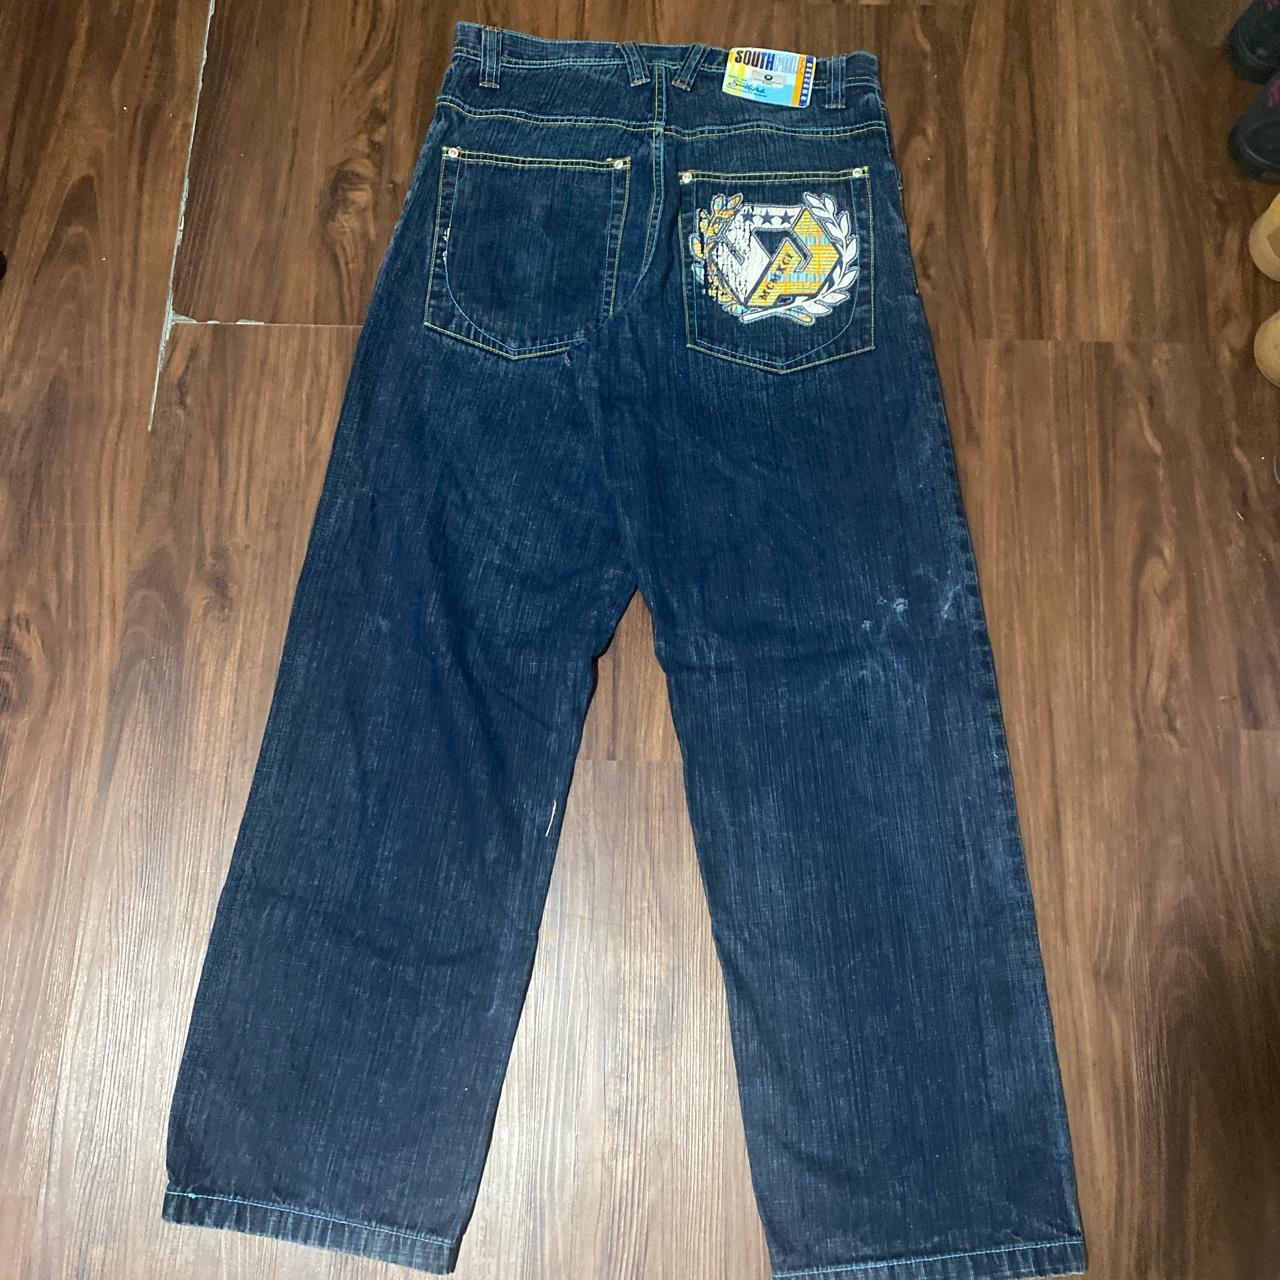 southpoles jeans men’s 32x32 good condition - Depop